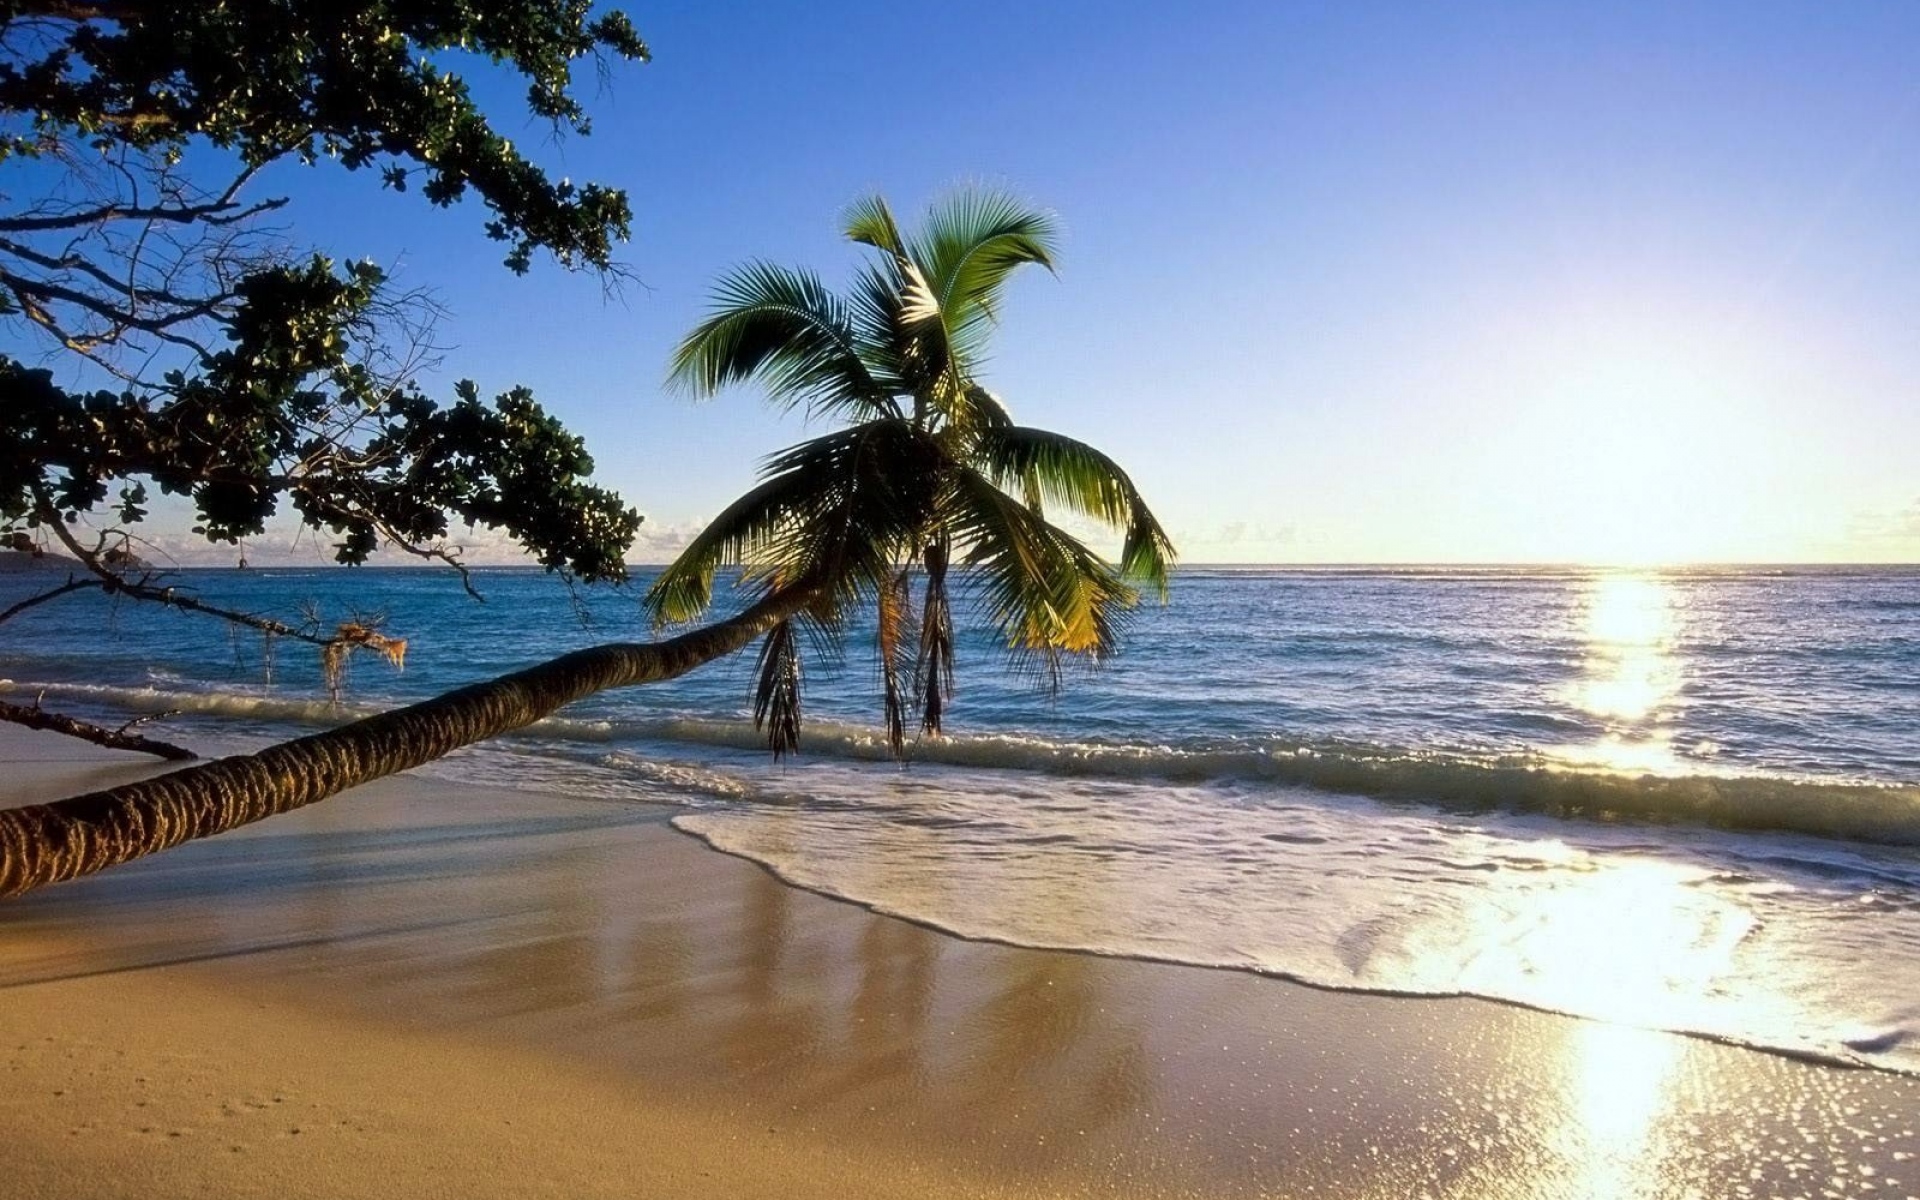 Картинки Пальма, деревья, пляж, берег, волна, склон, солнце, море фото и обои на рабочий стол